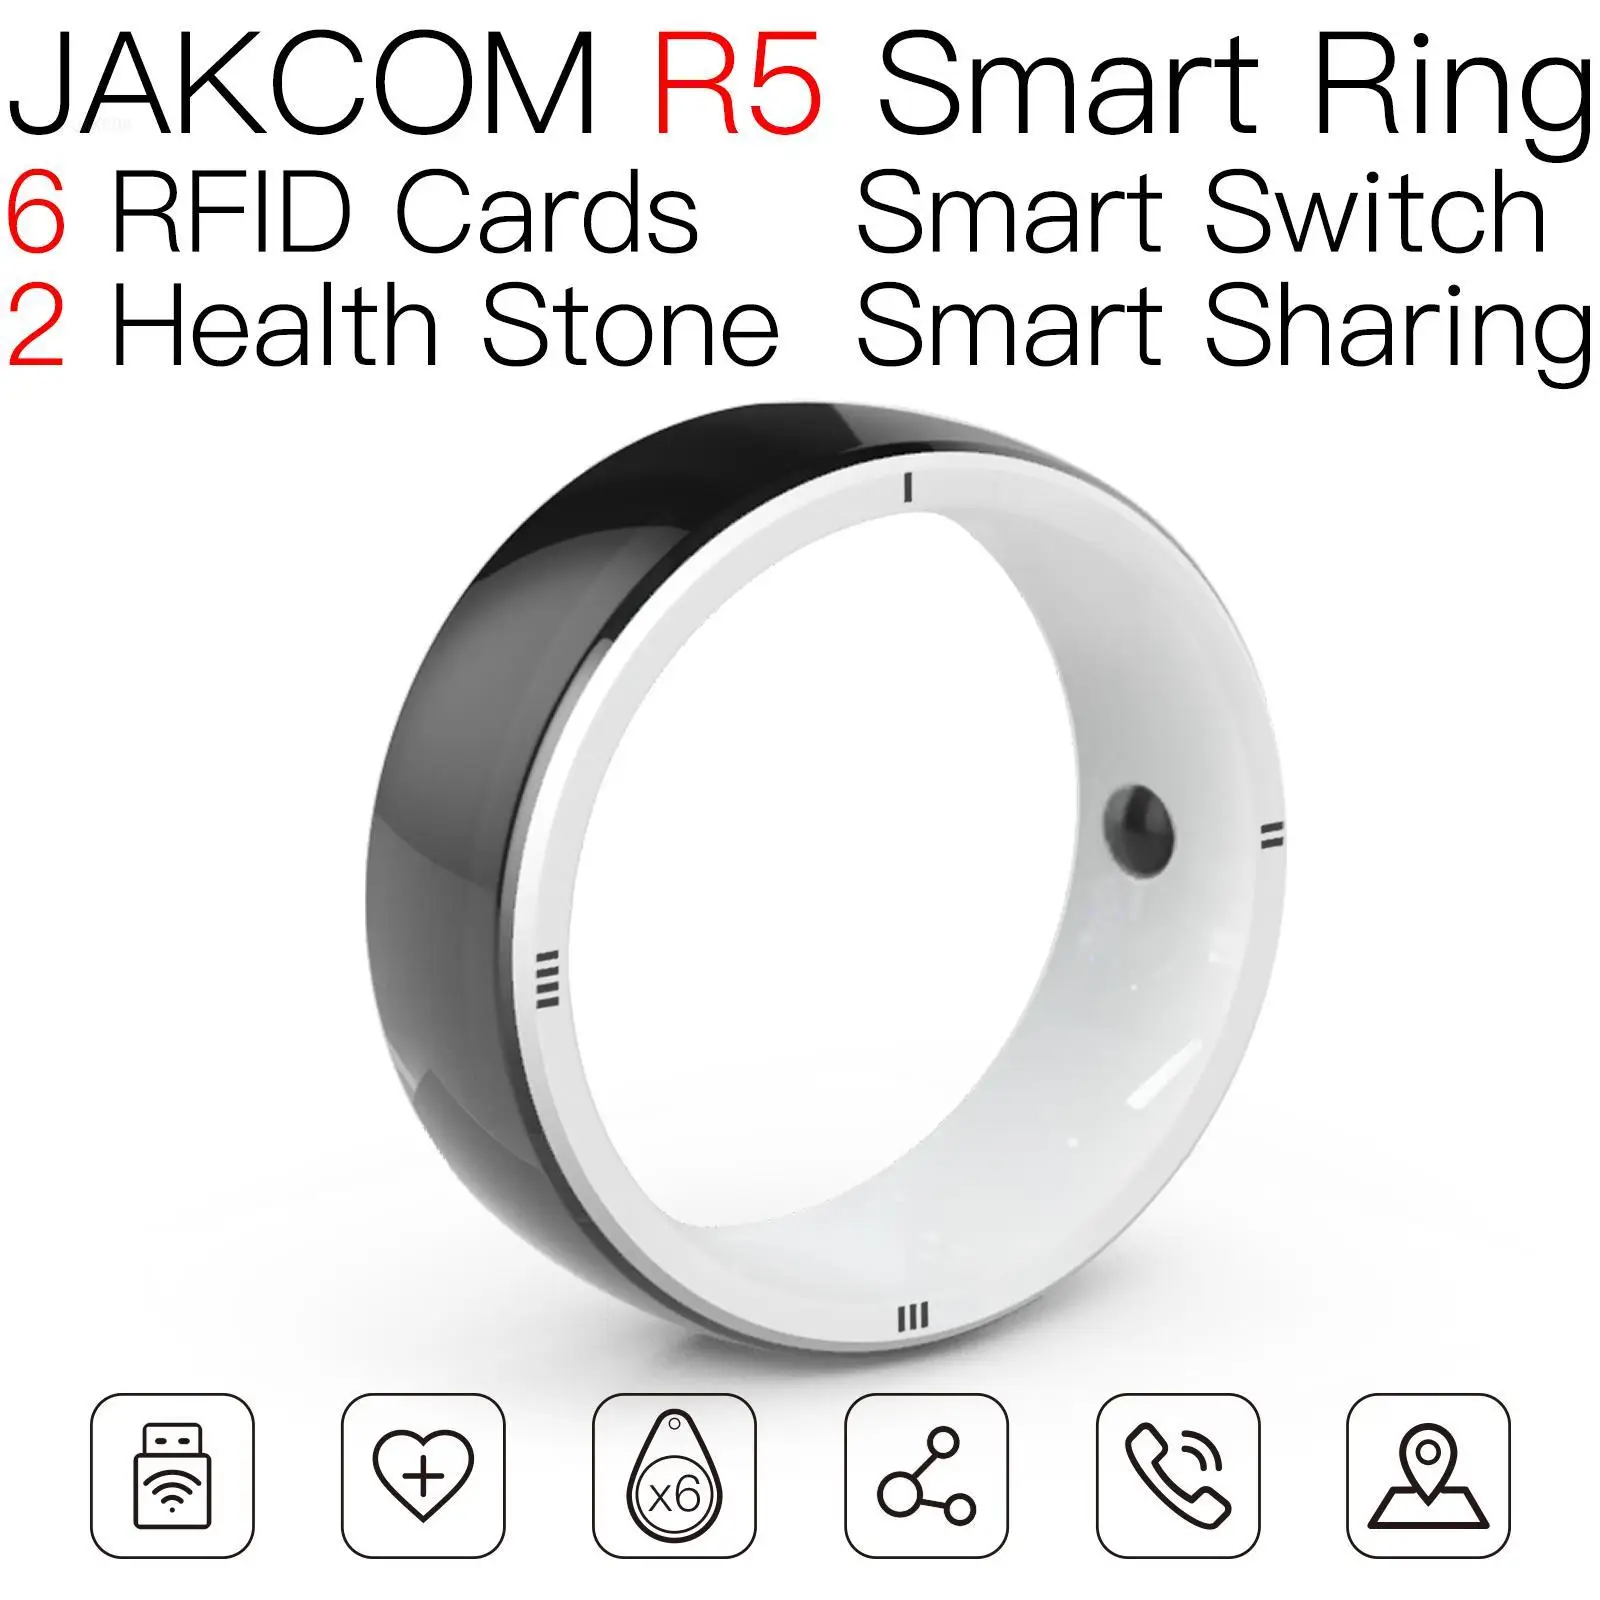 

Умное кольцо JAKCOM R5, лучше, чем distake deauther, часы, смартфон i14 max, женщина, ничего 1, мышь, Супер копия